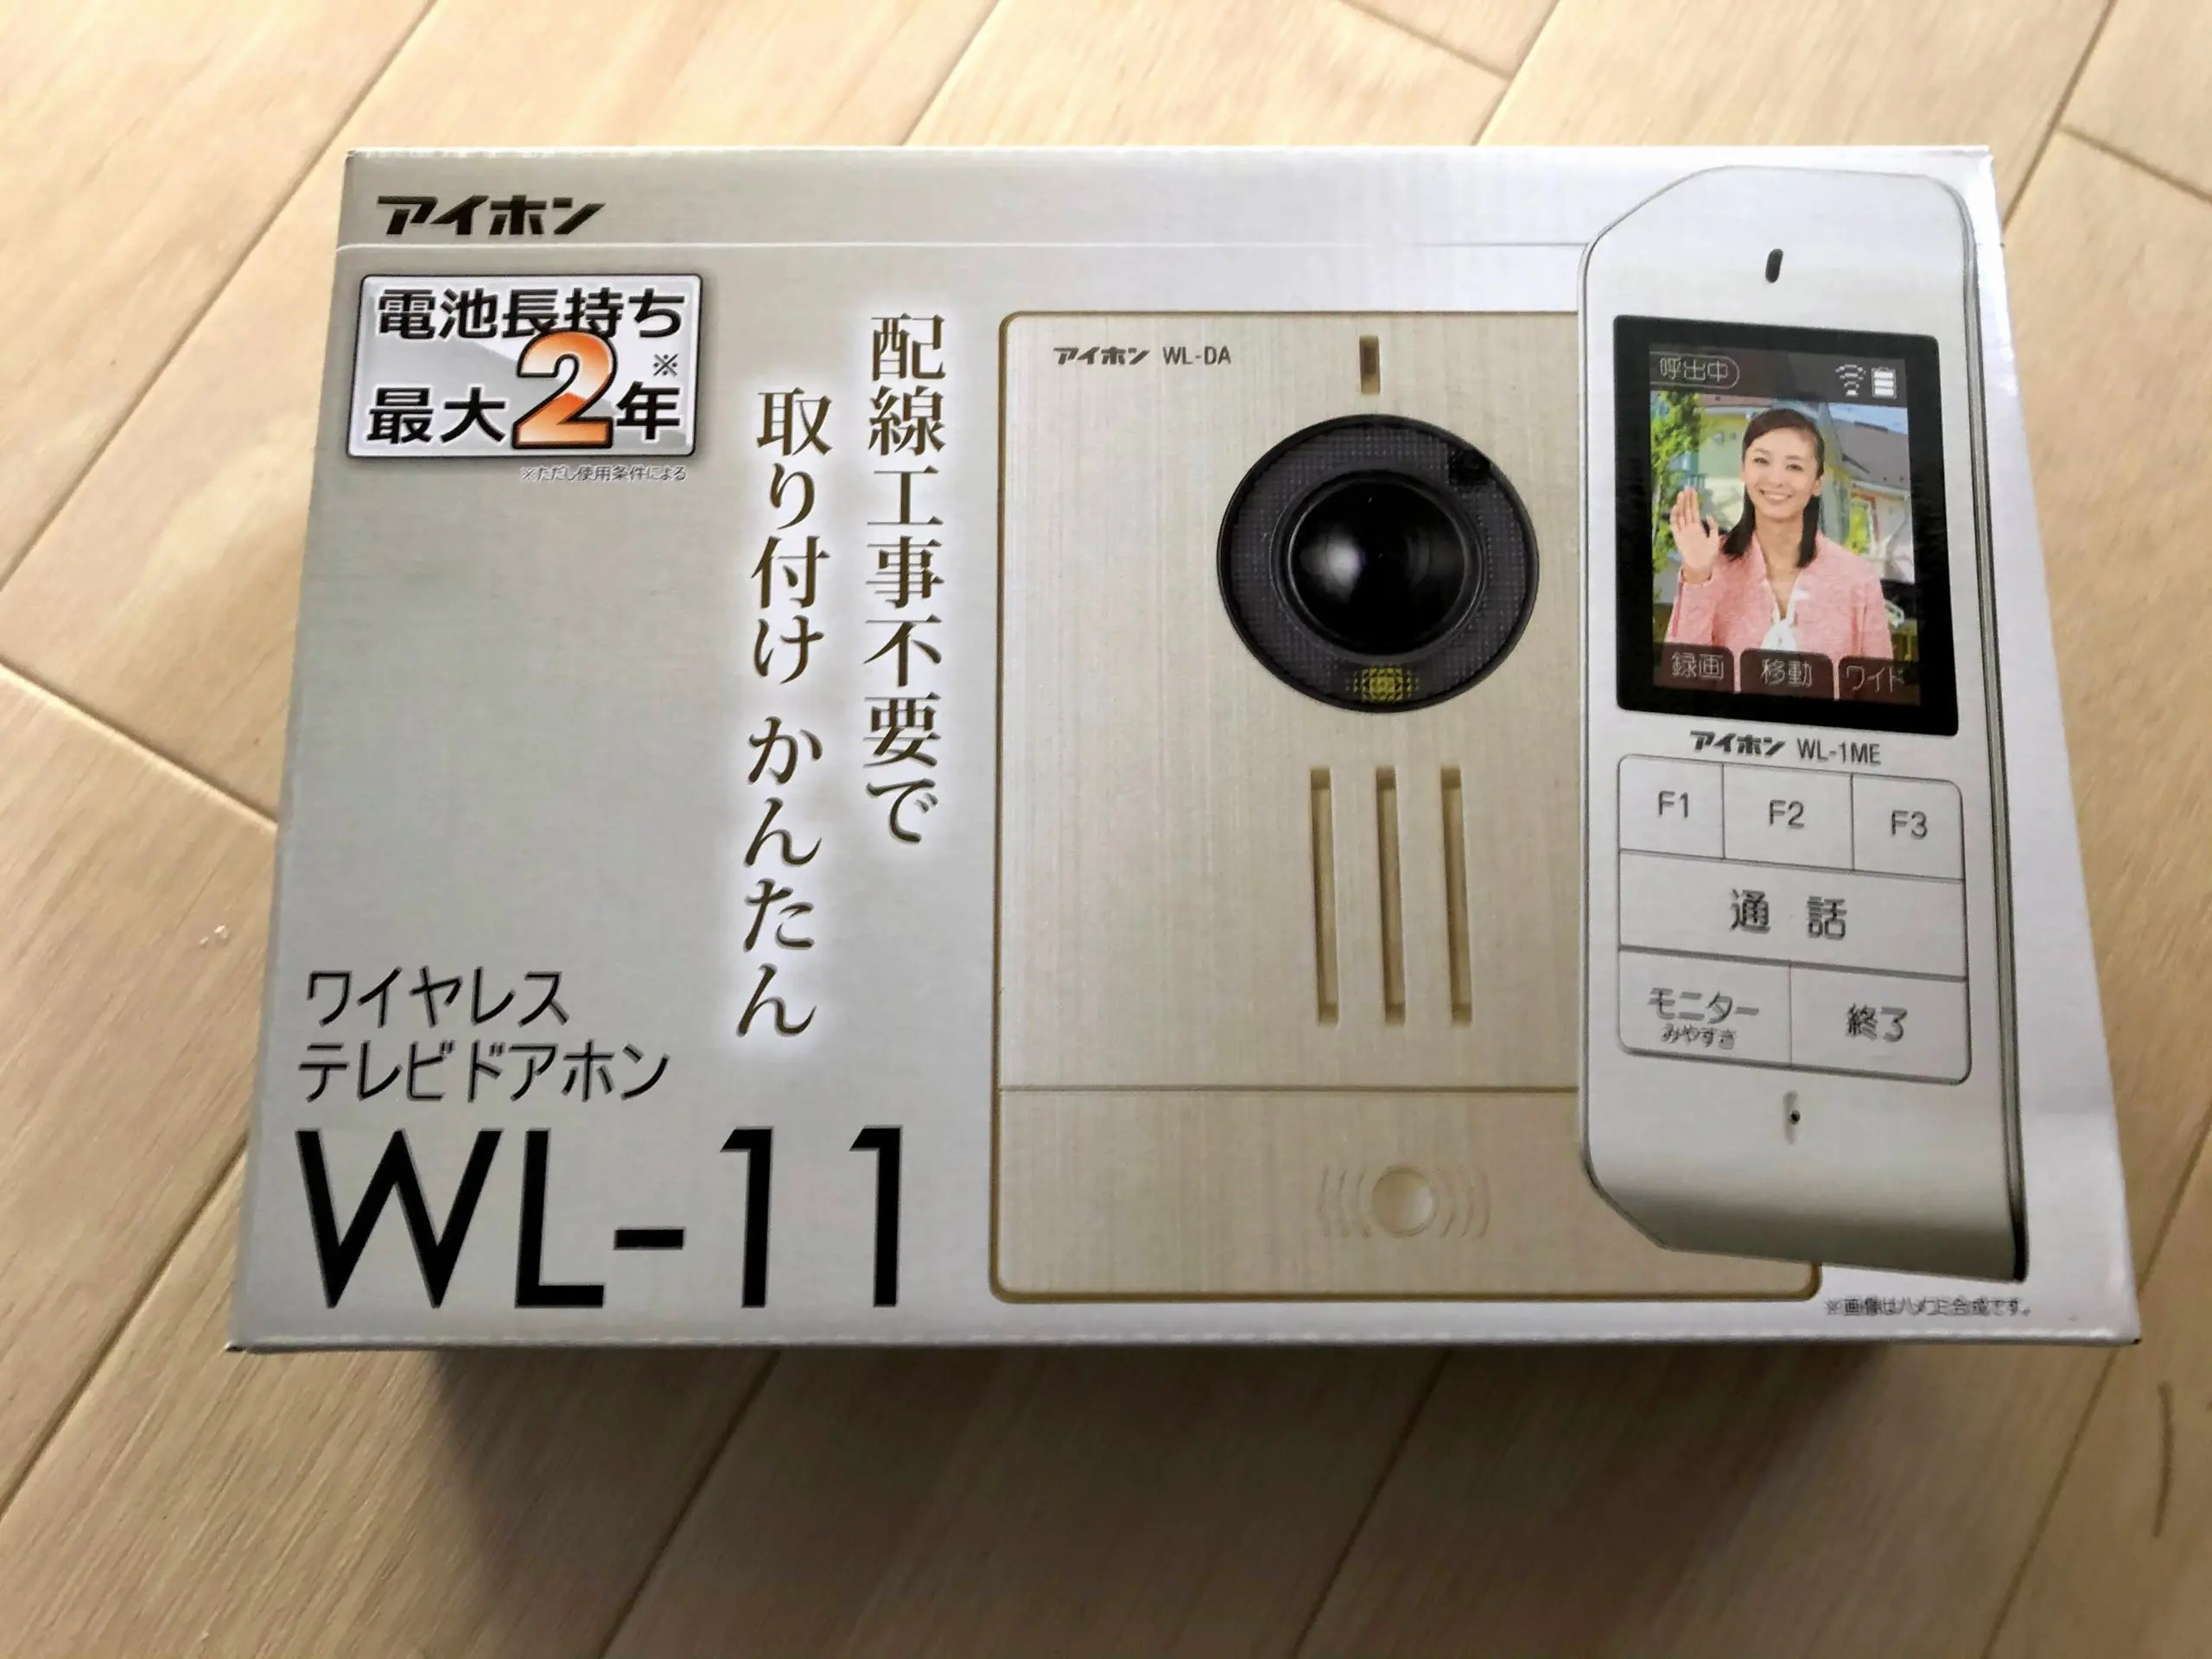 ワイヤレステレビドアホン WL-11(1台) アイホン